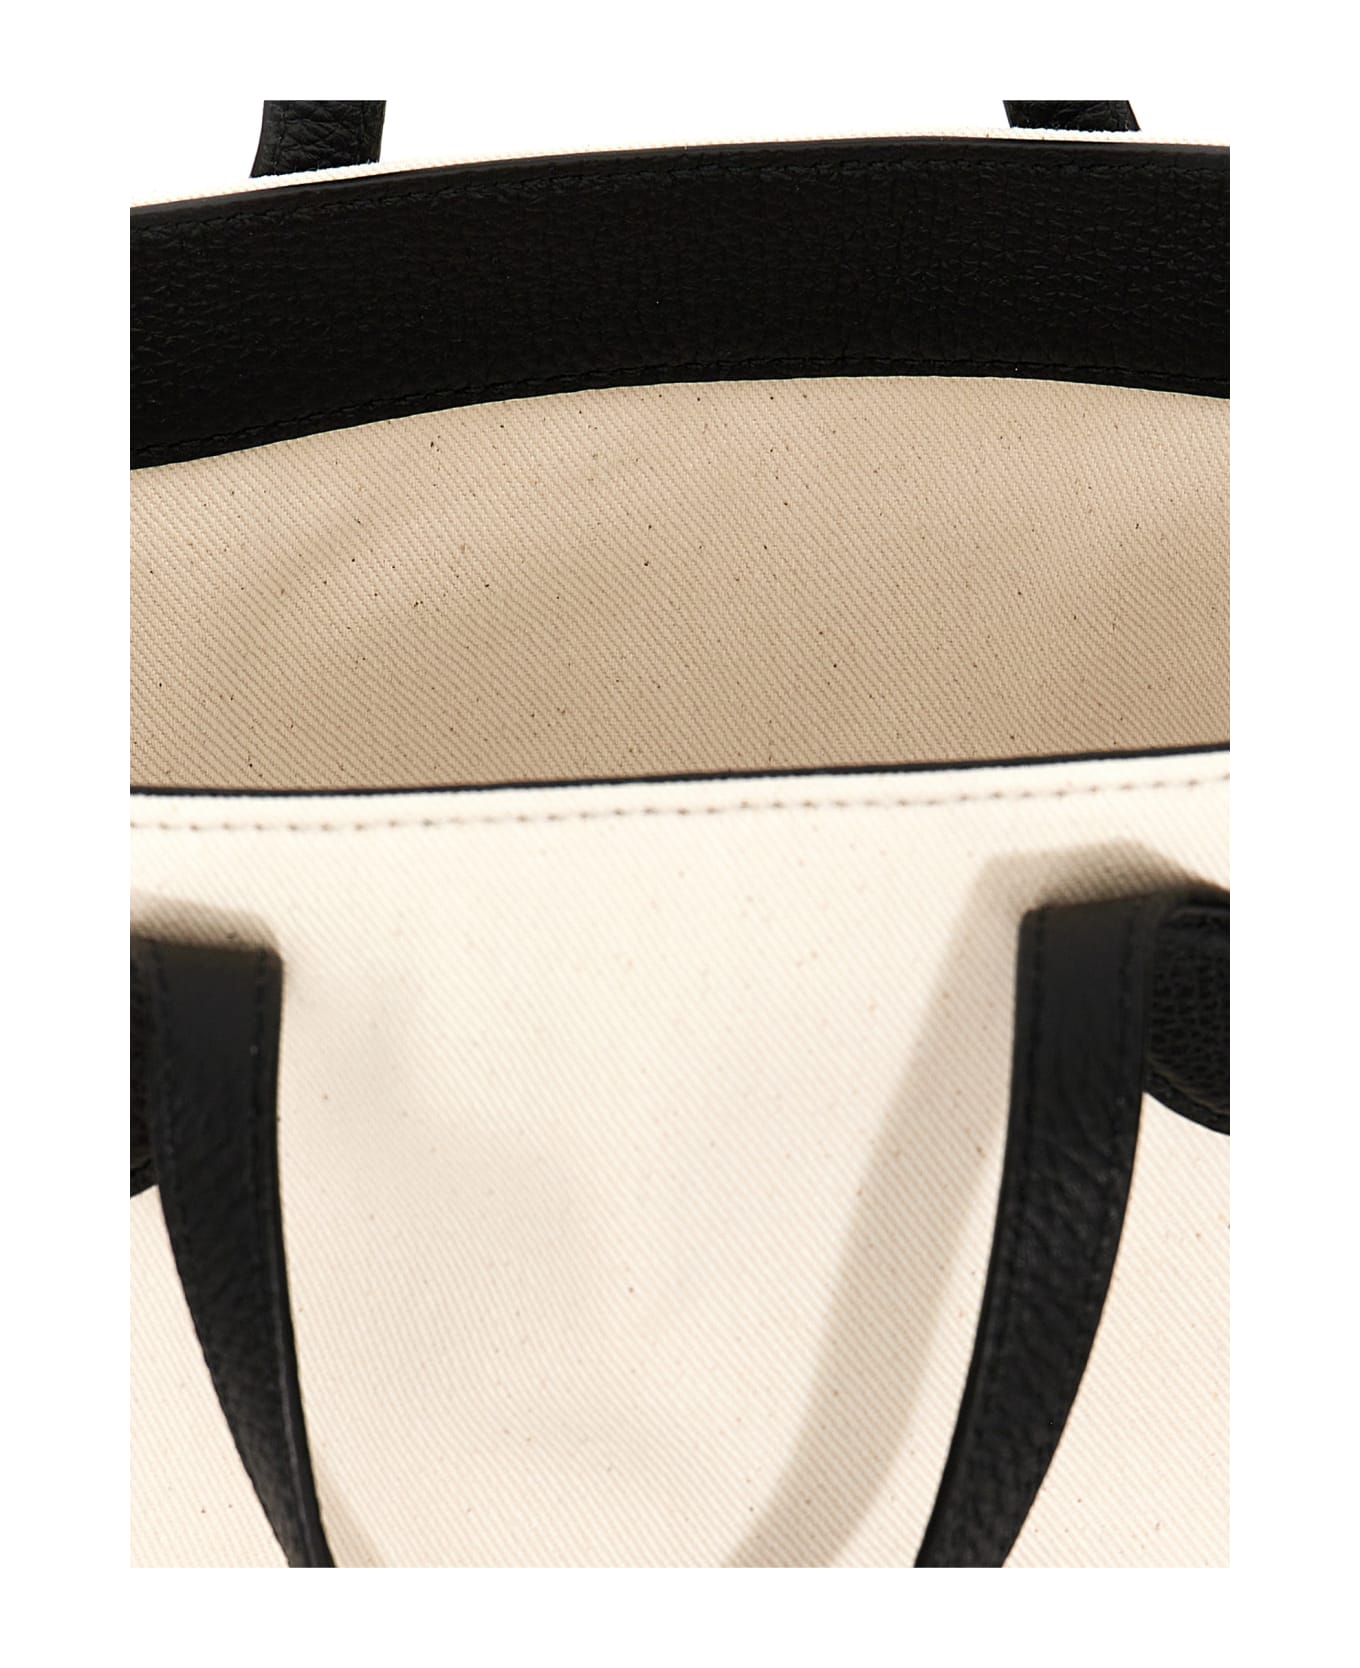 Bally 'bar' Handbag - White/Black